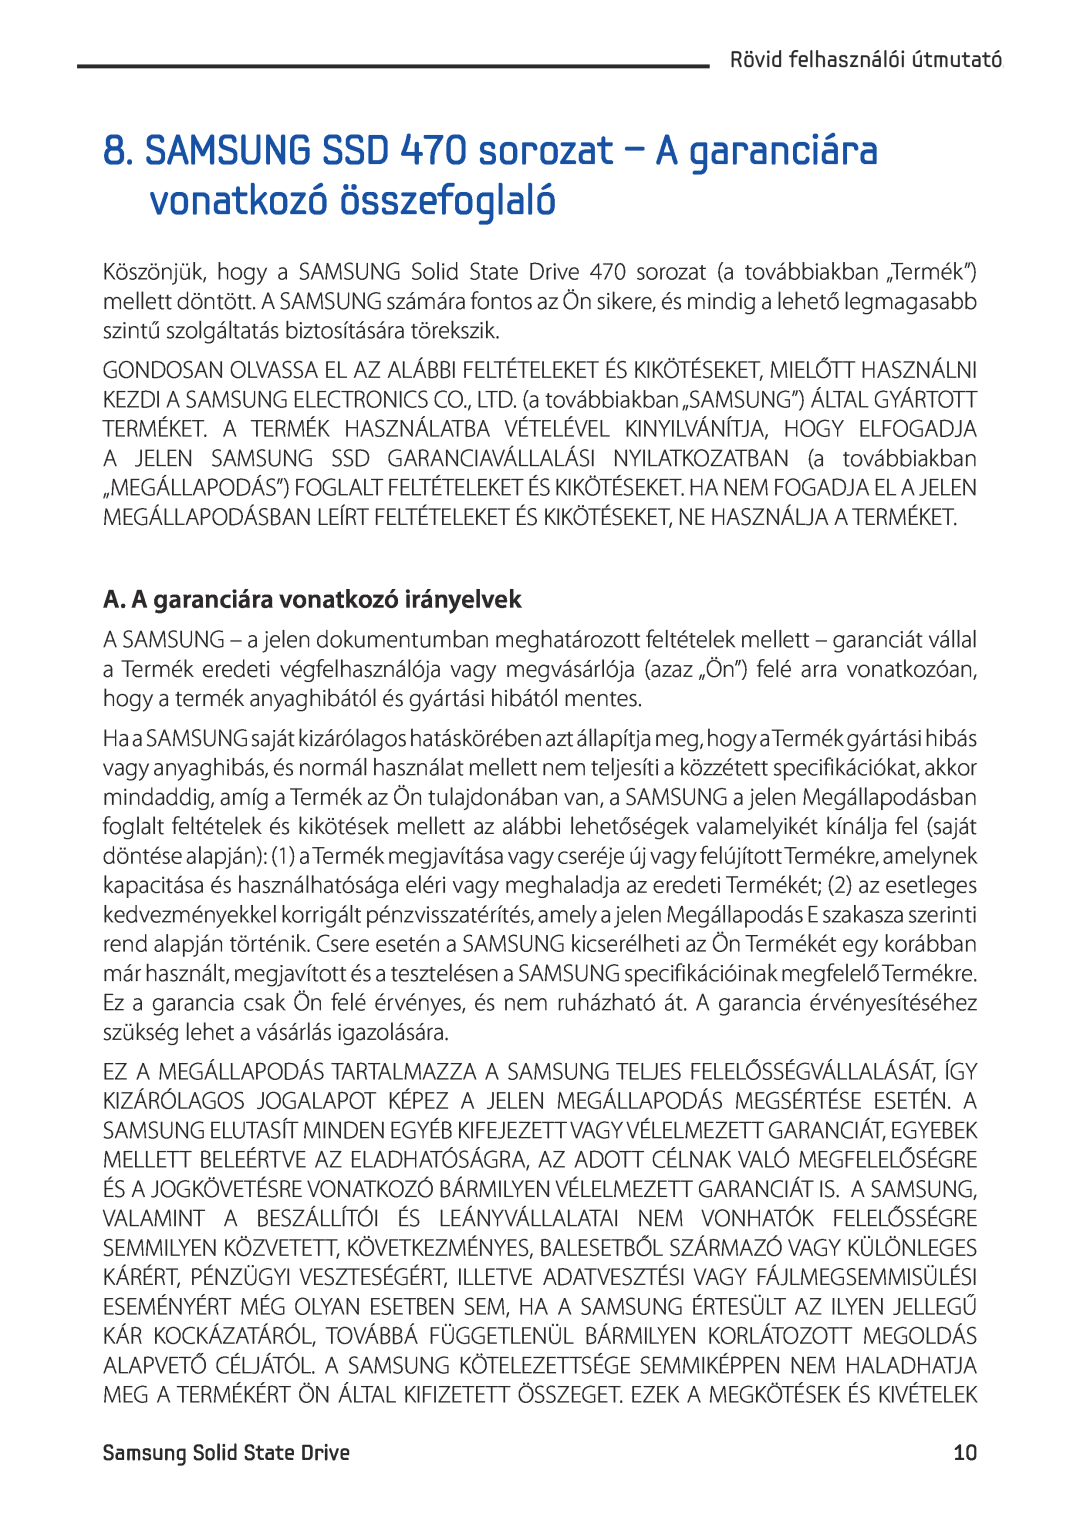 Samsung MZ-5PA128C/EU SAMSUNG SSD 470 sorozat - A garanciára vonatkozó összefoglaló, A. A garanciára vonatkozó irányelvek 